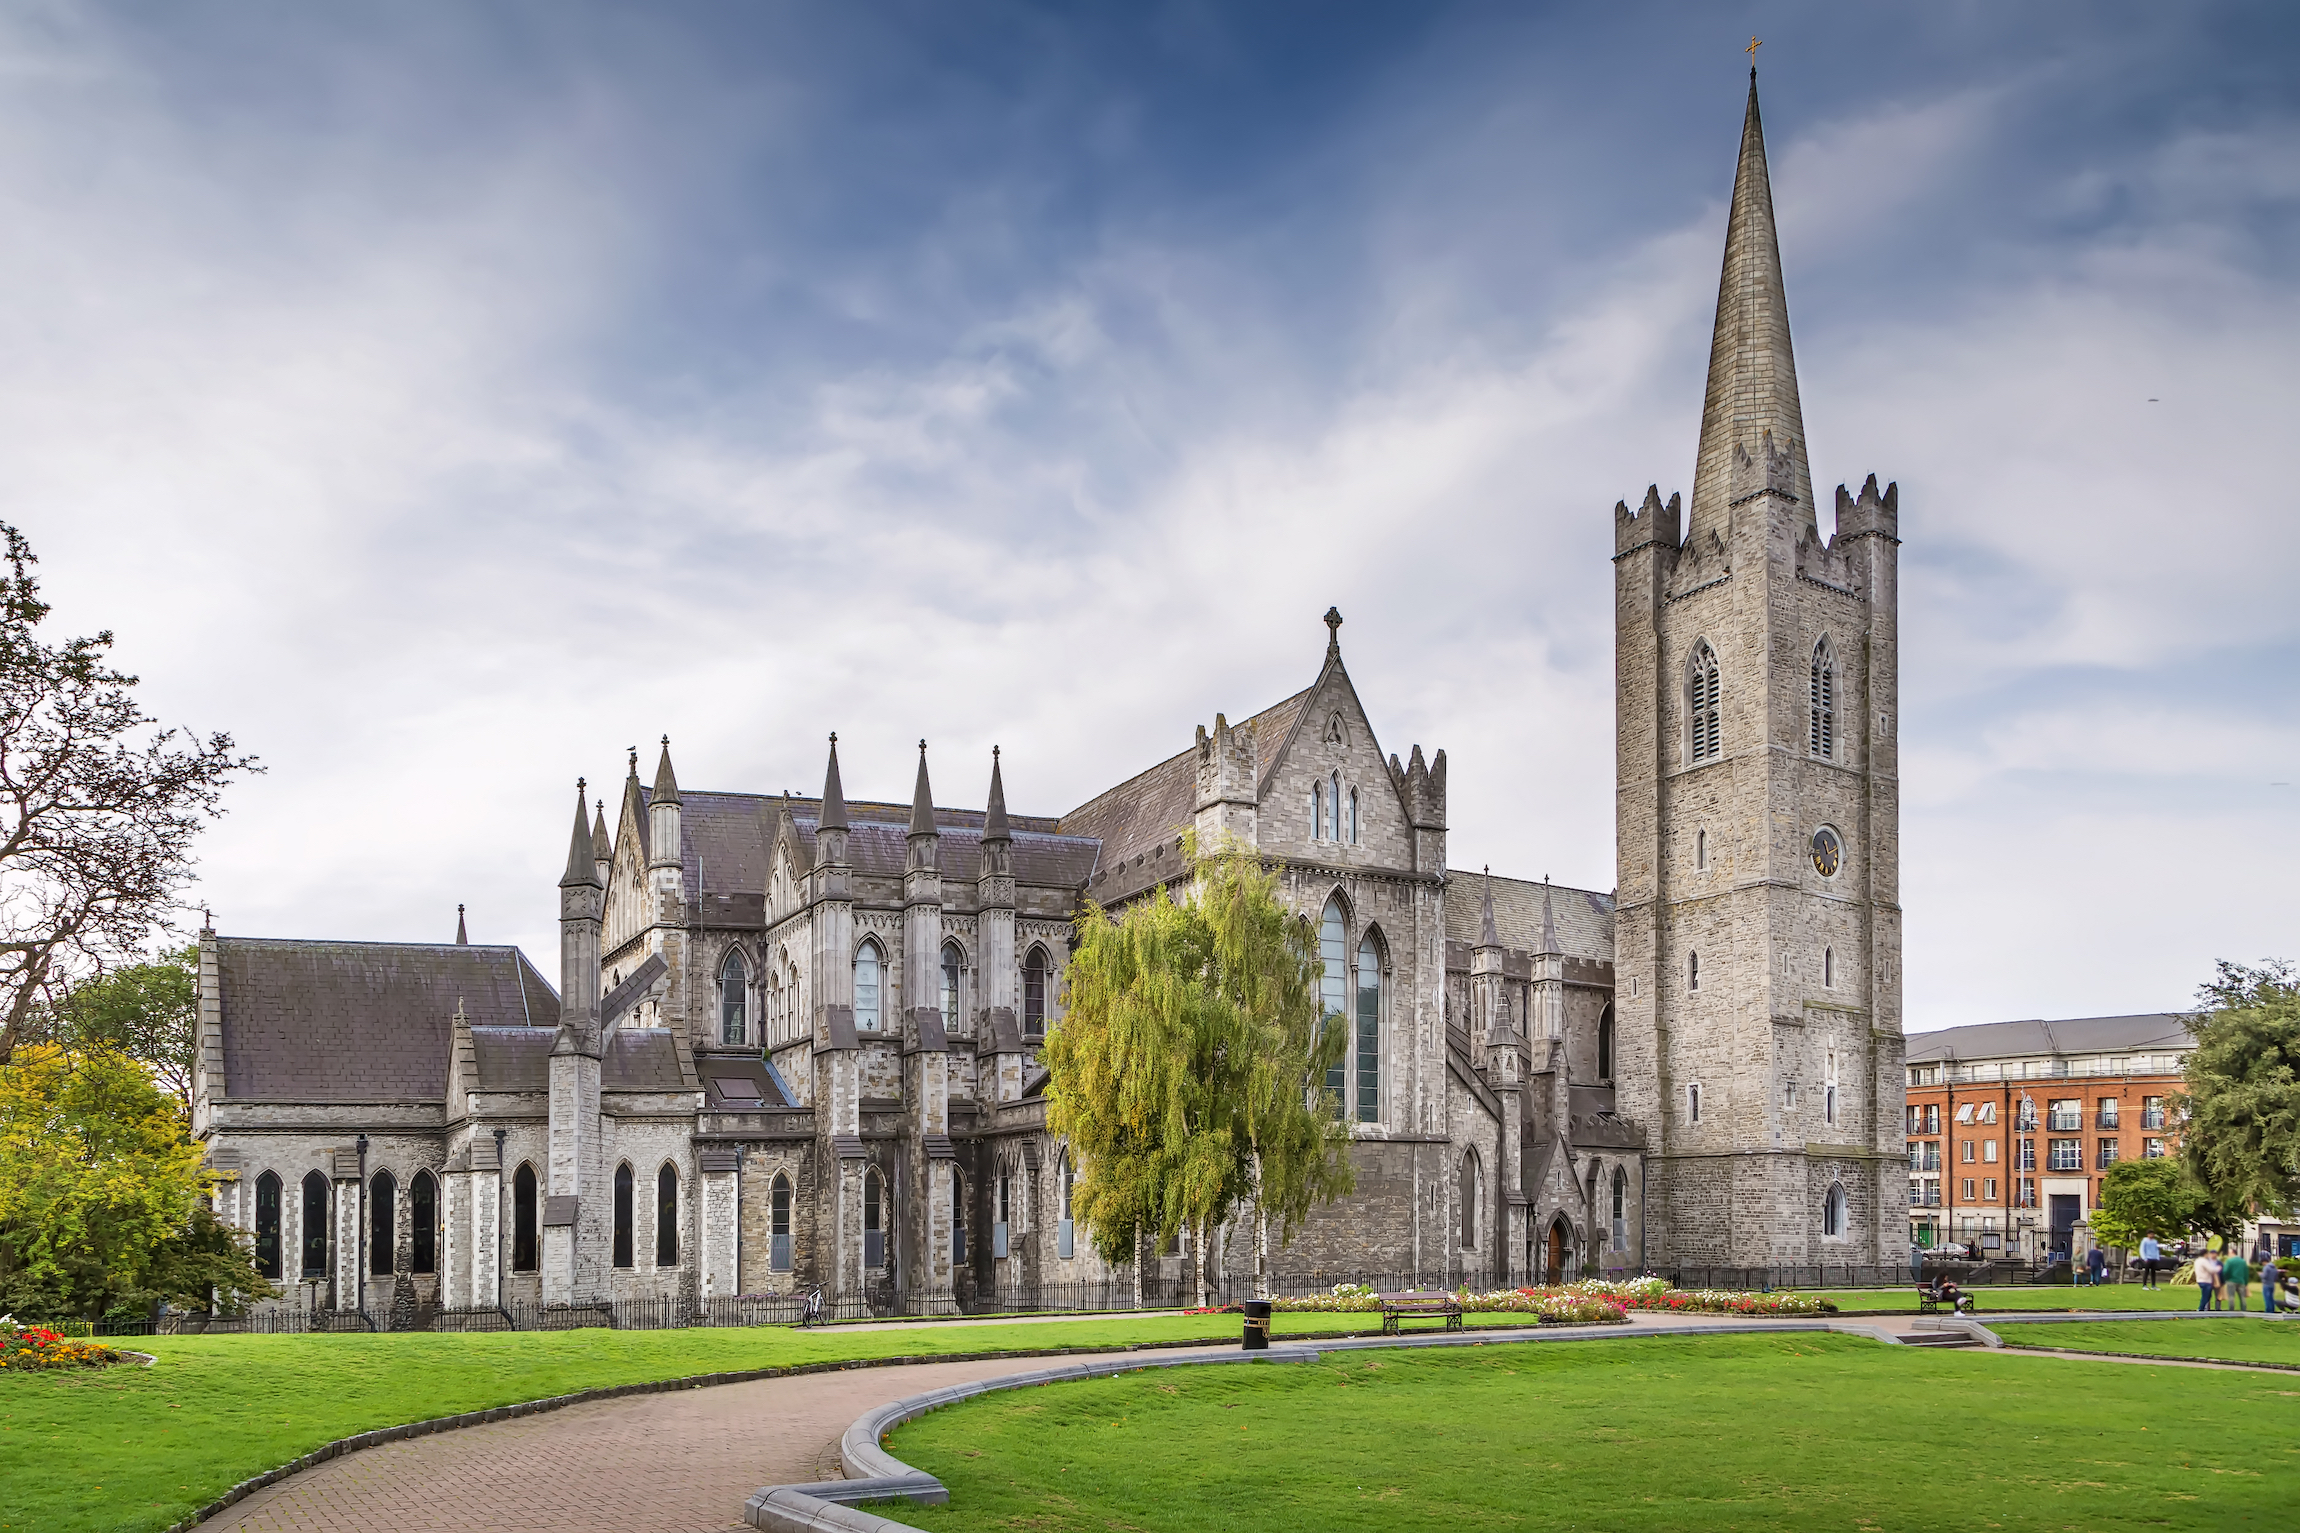 Katedra Świętego Patryka w Dublinie w Irlandii, założona w 1191 roku, jest narodową katedrą Kościoła Irlandii TOP 10 najciekawszych atrakcji w Dublinie